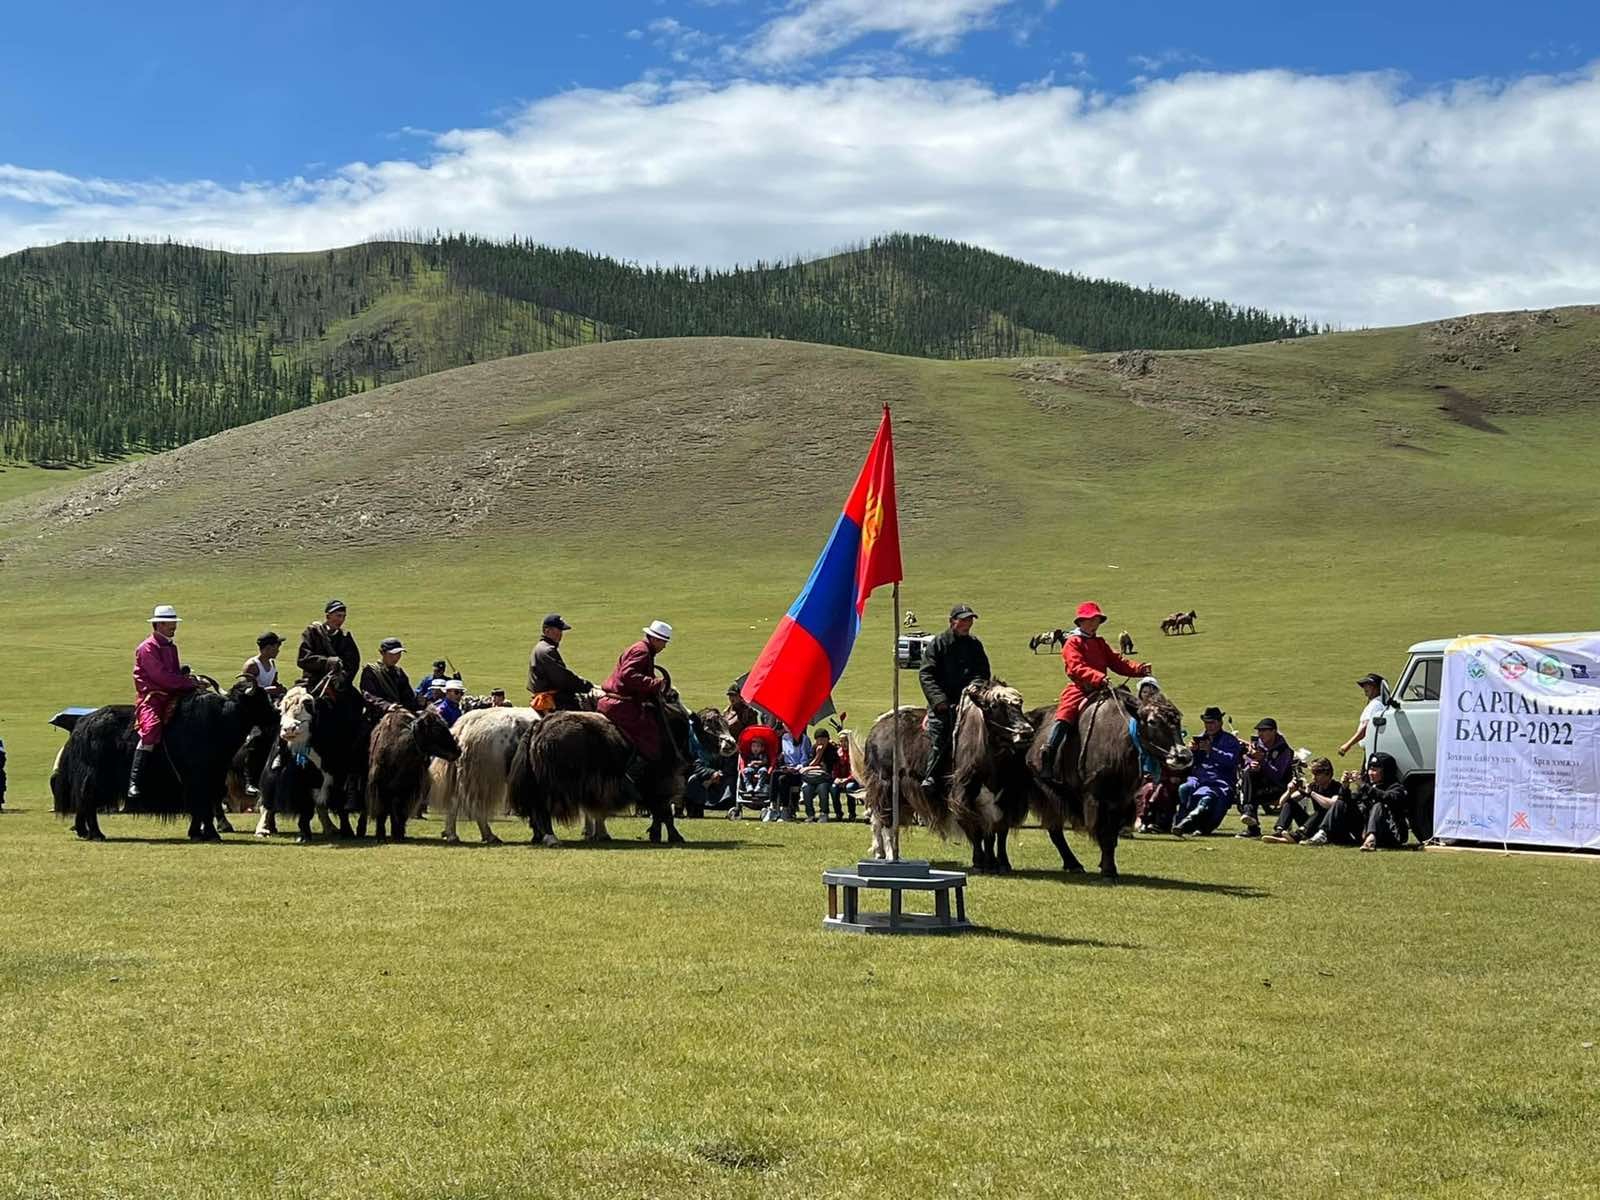 Өвөрхангай аймагт “Монгол эсгий урлалын баяр",  “Сарлагийн баяр” зэрэг аялал жуулчлалын эвент арга хэмжээ боллоо